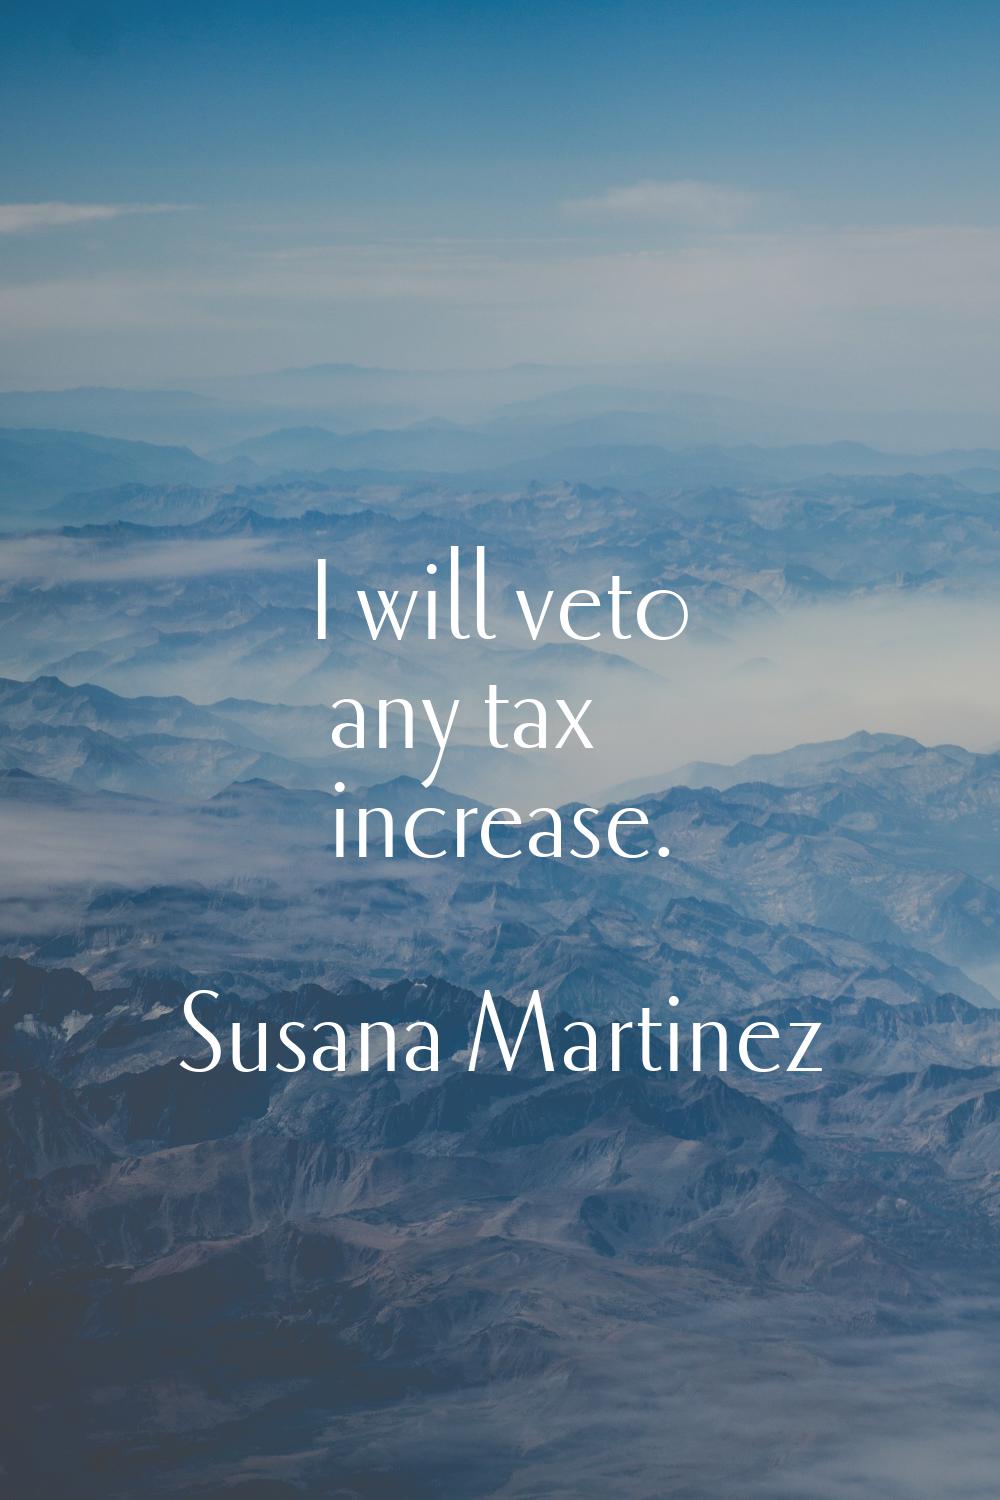 I will veto any tax increase.